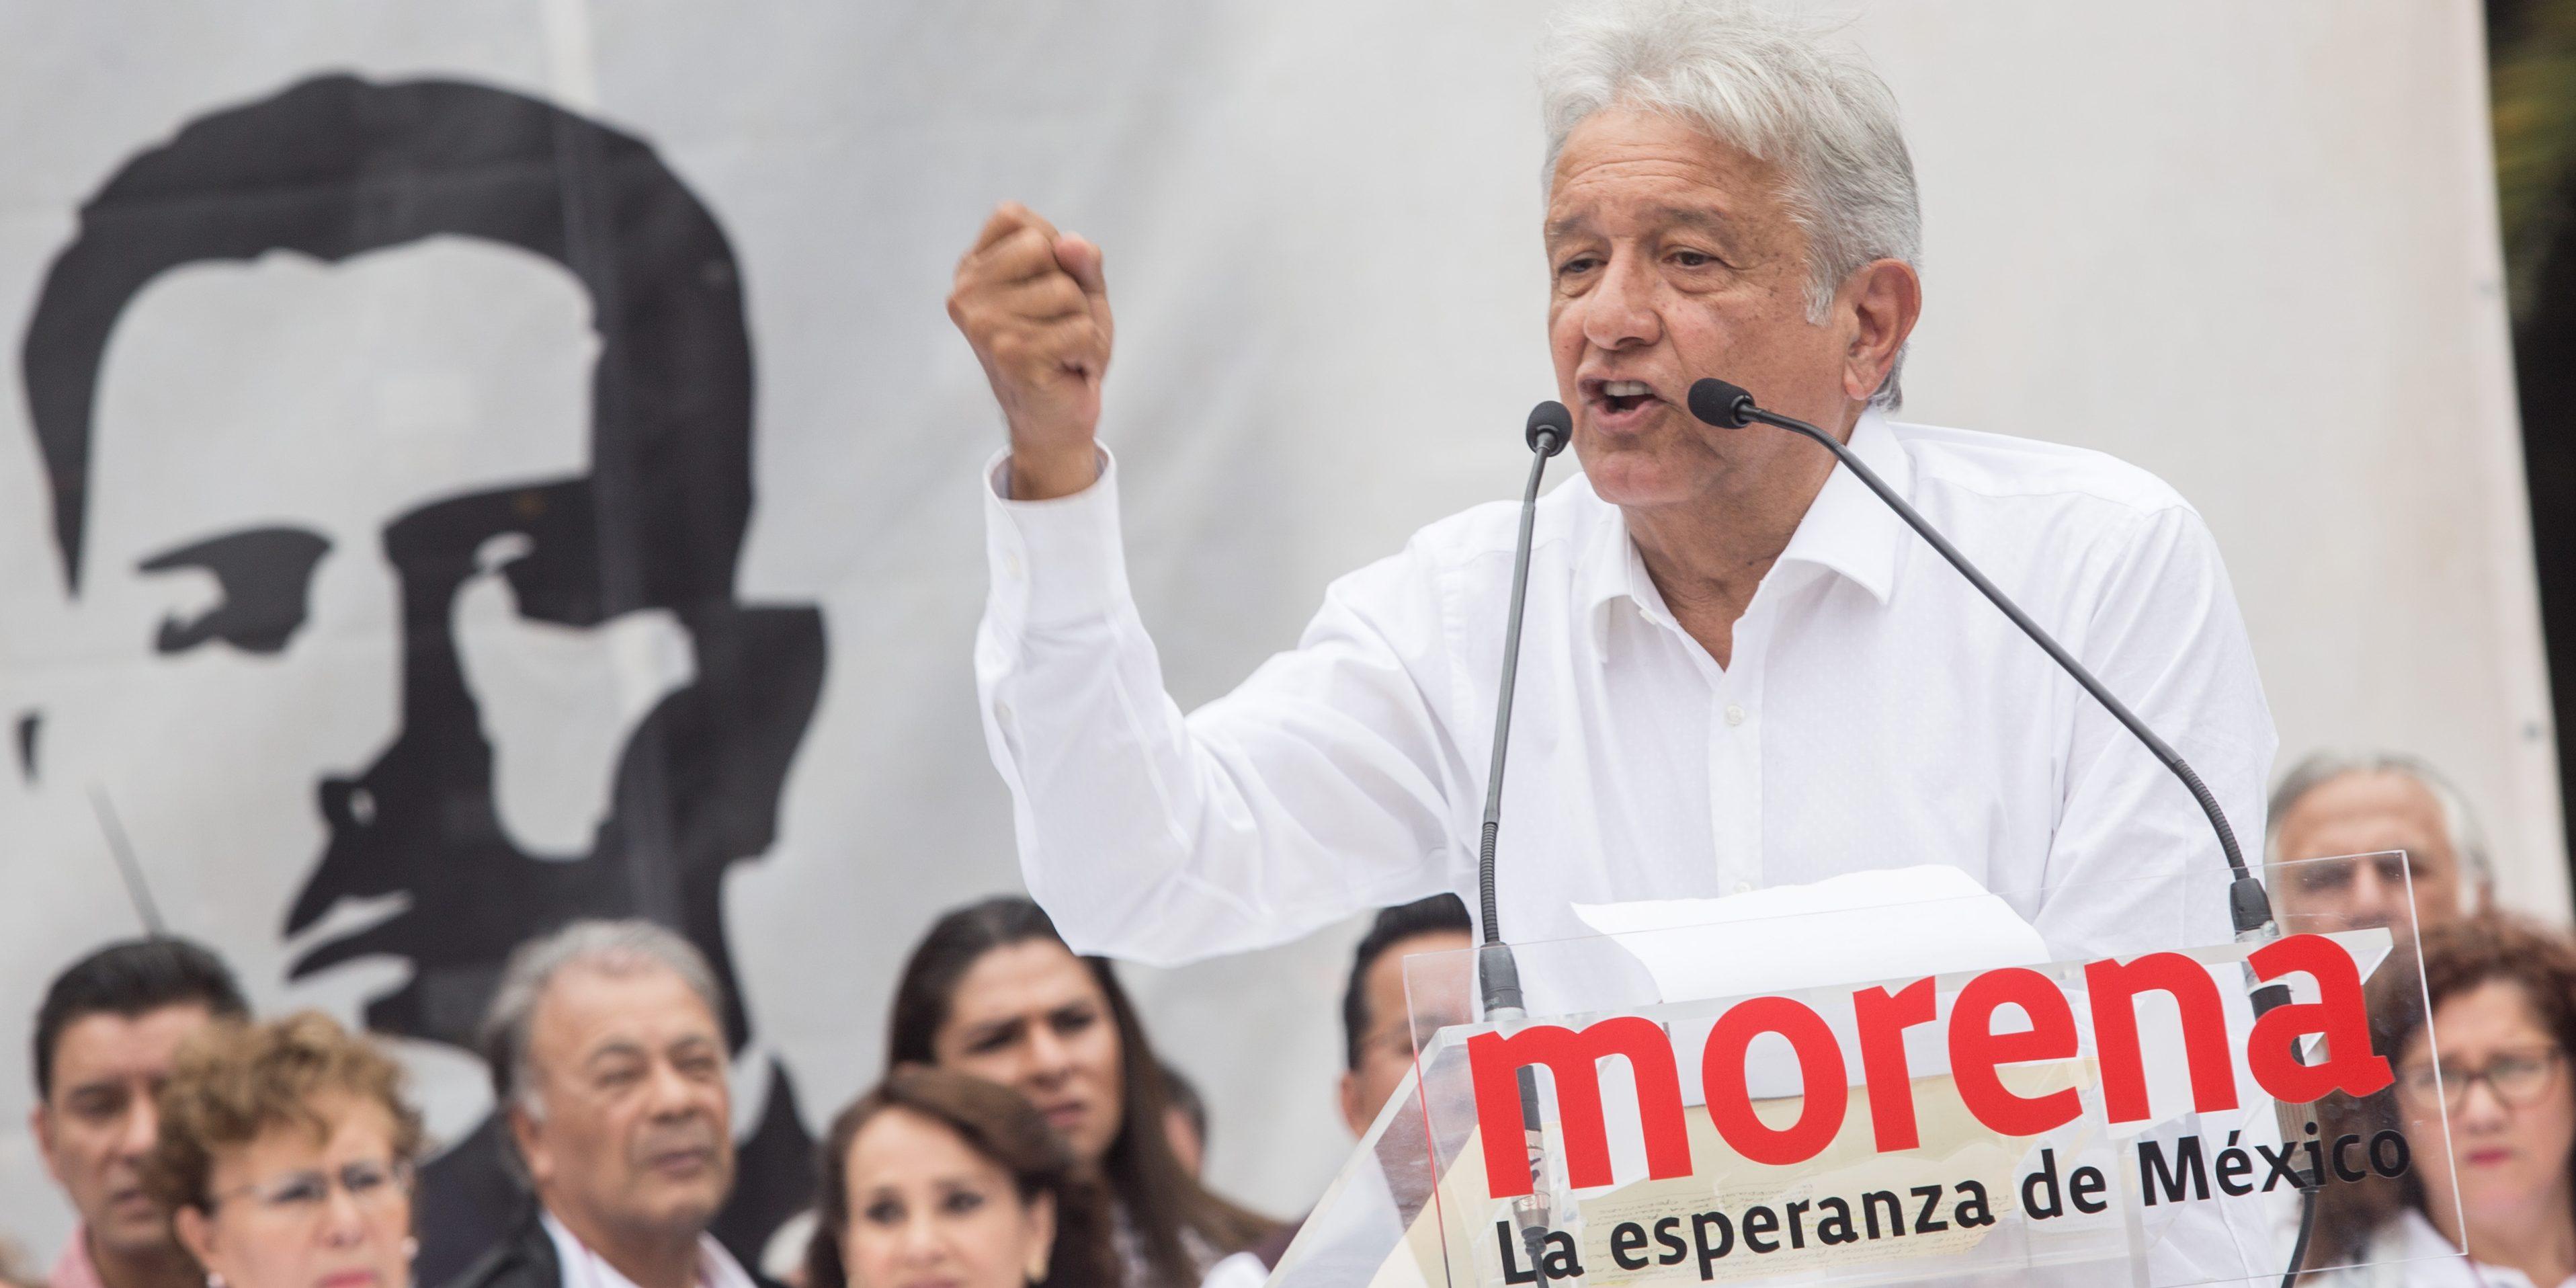 López Obrador, favorito rumbo al 2018; el Frente PAN, PRD y MC va segundo en preferencias